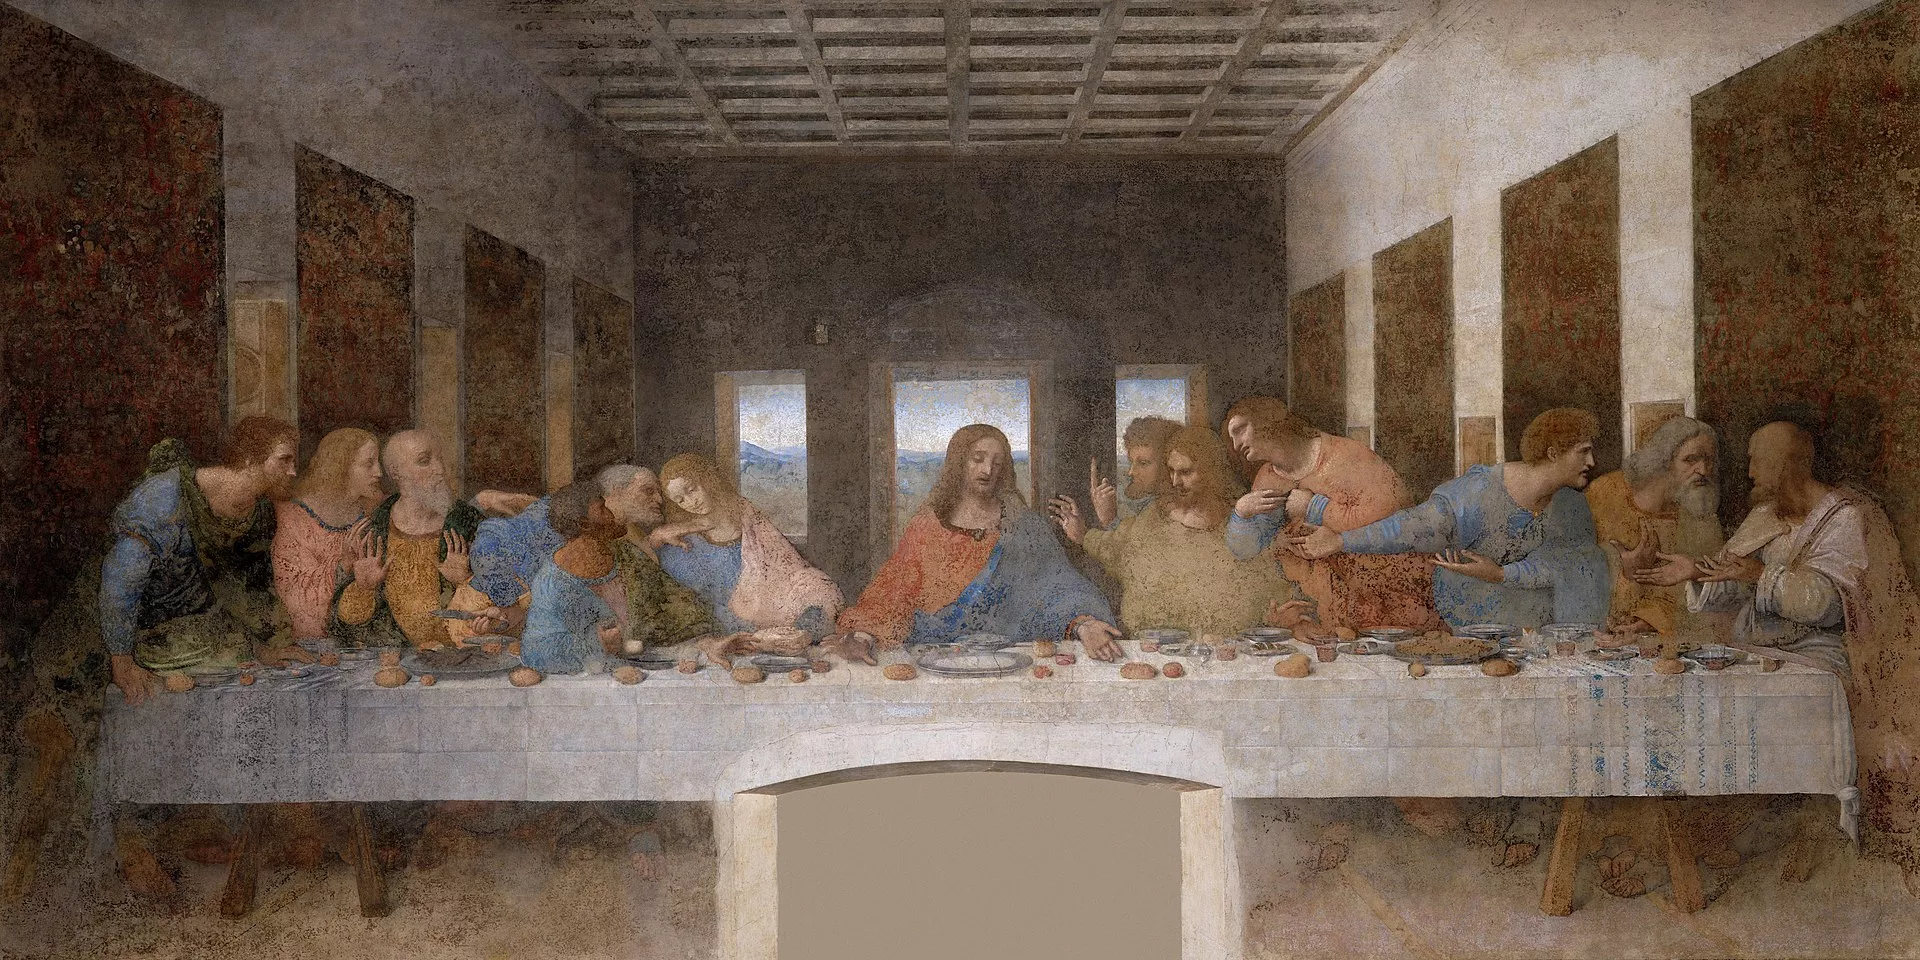 El novembre del 1943, el refectori del convent de Santa Maria delle Grazie quedà destrossat però el mural de Da Vinci estava intacte